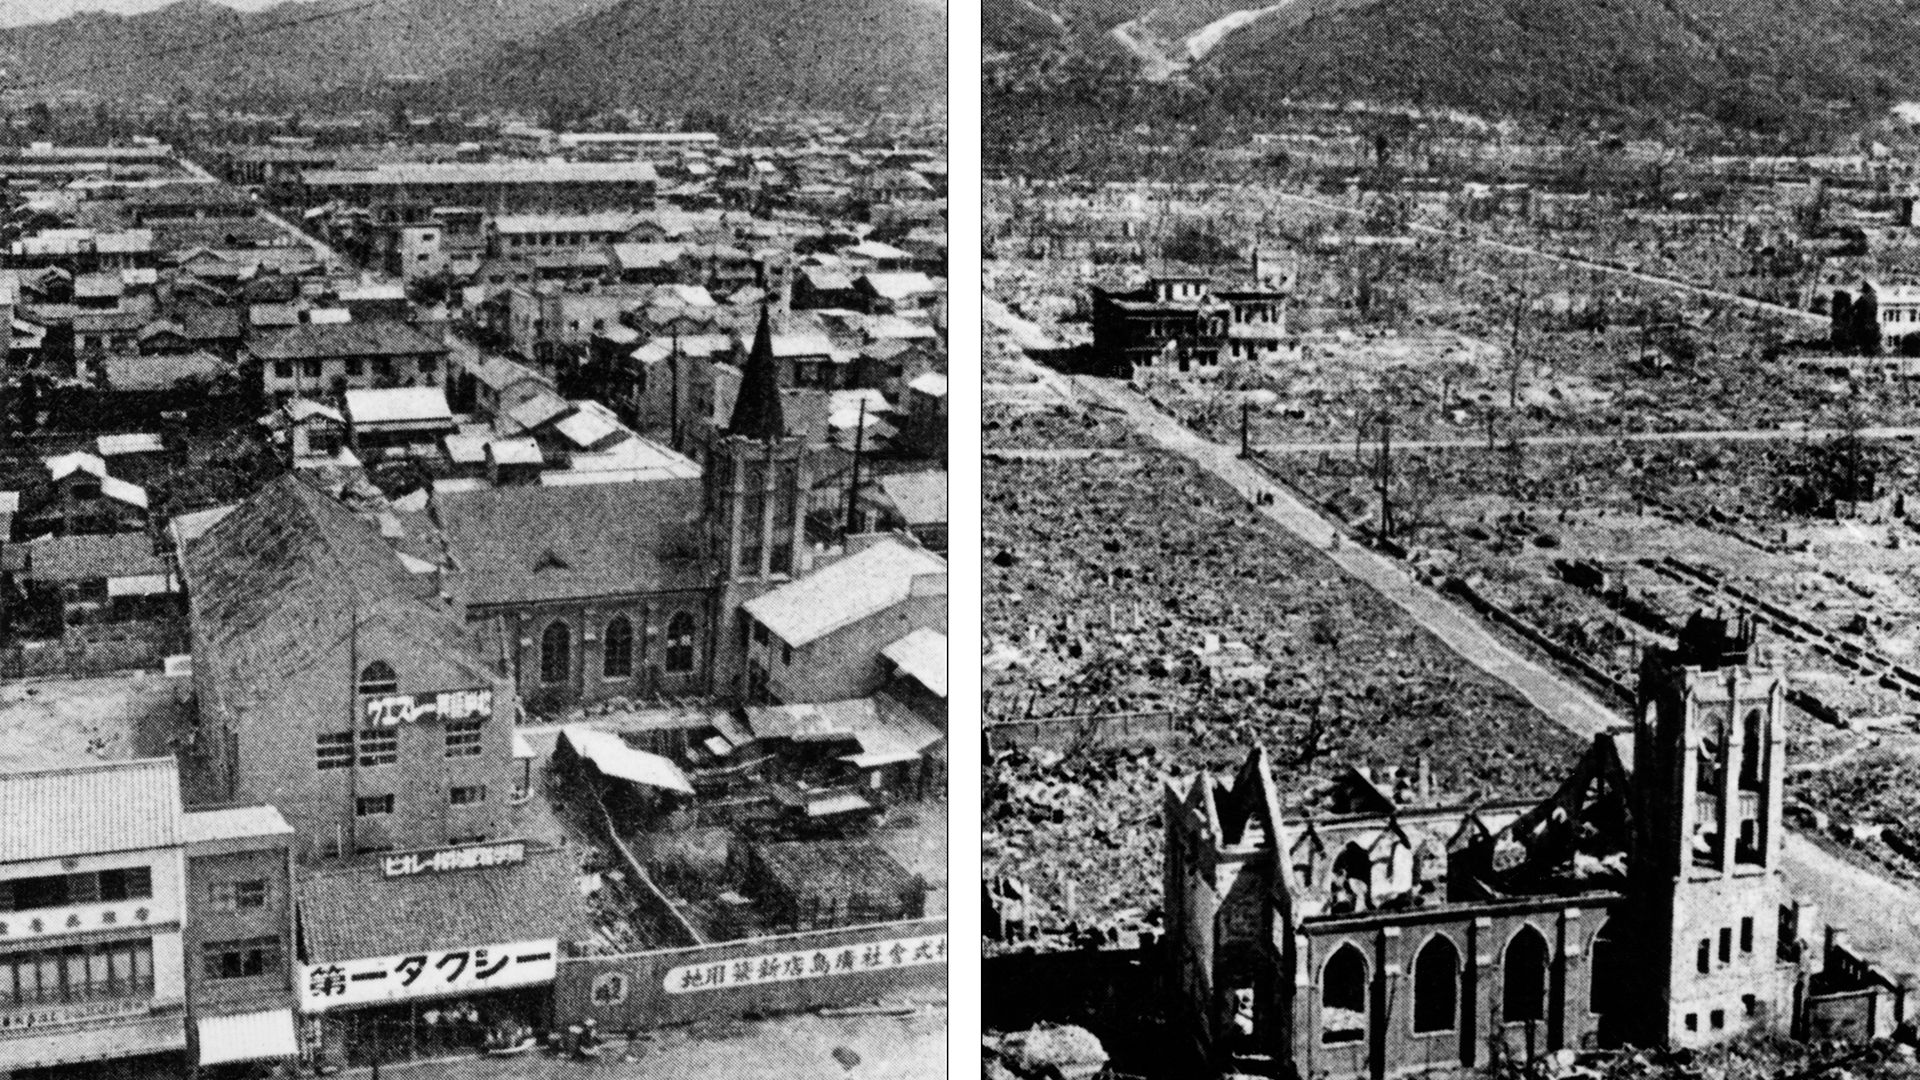 हिरोशिमा दिवस क्या है? उस न्यूक्लियर हमले के बारे में जानें, जिसने करीब 1 लाख लोगों की जान ली